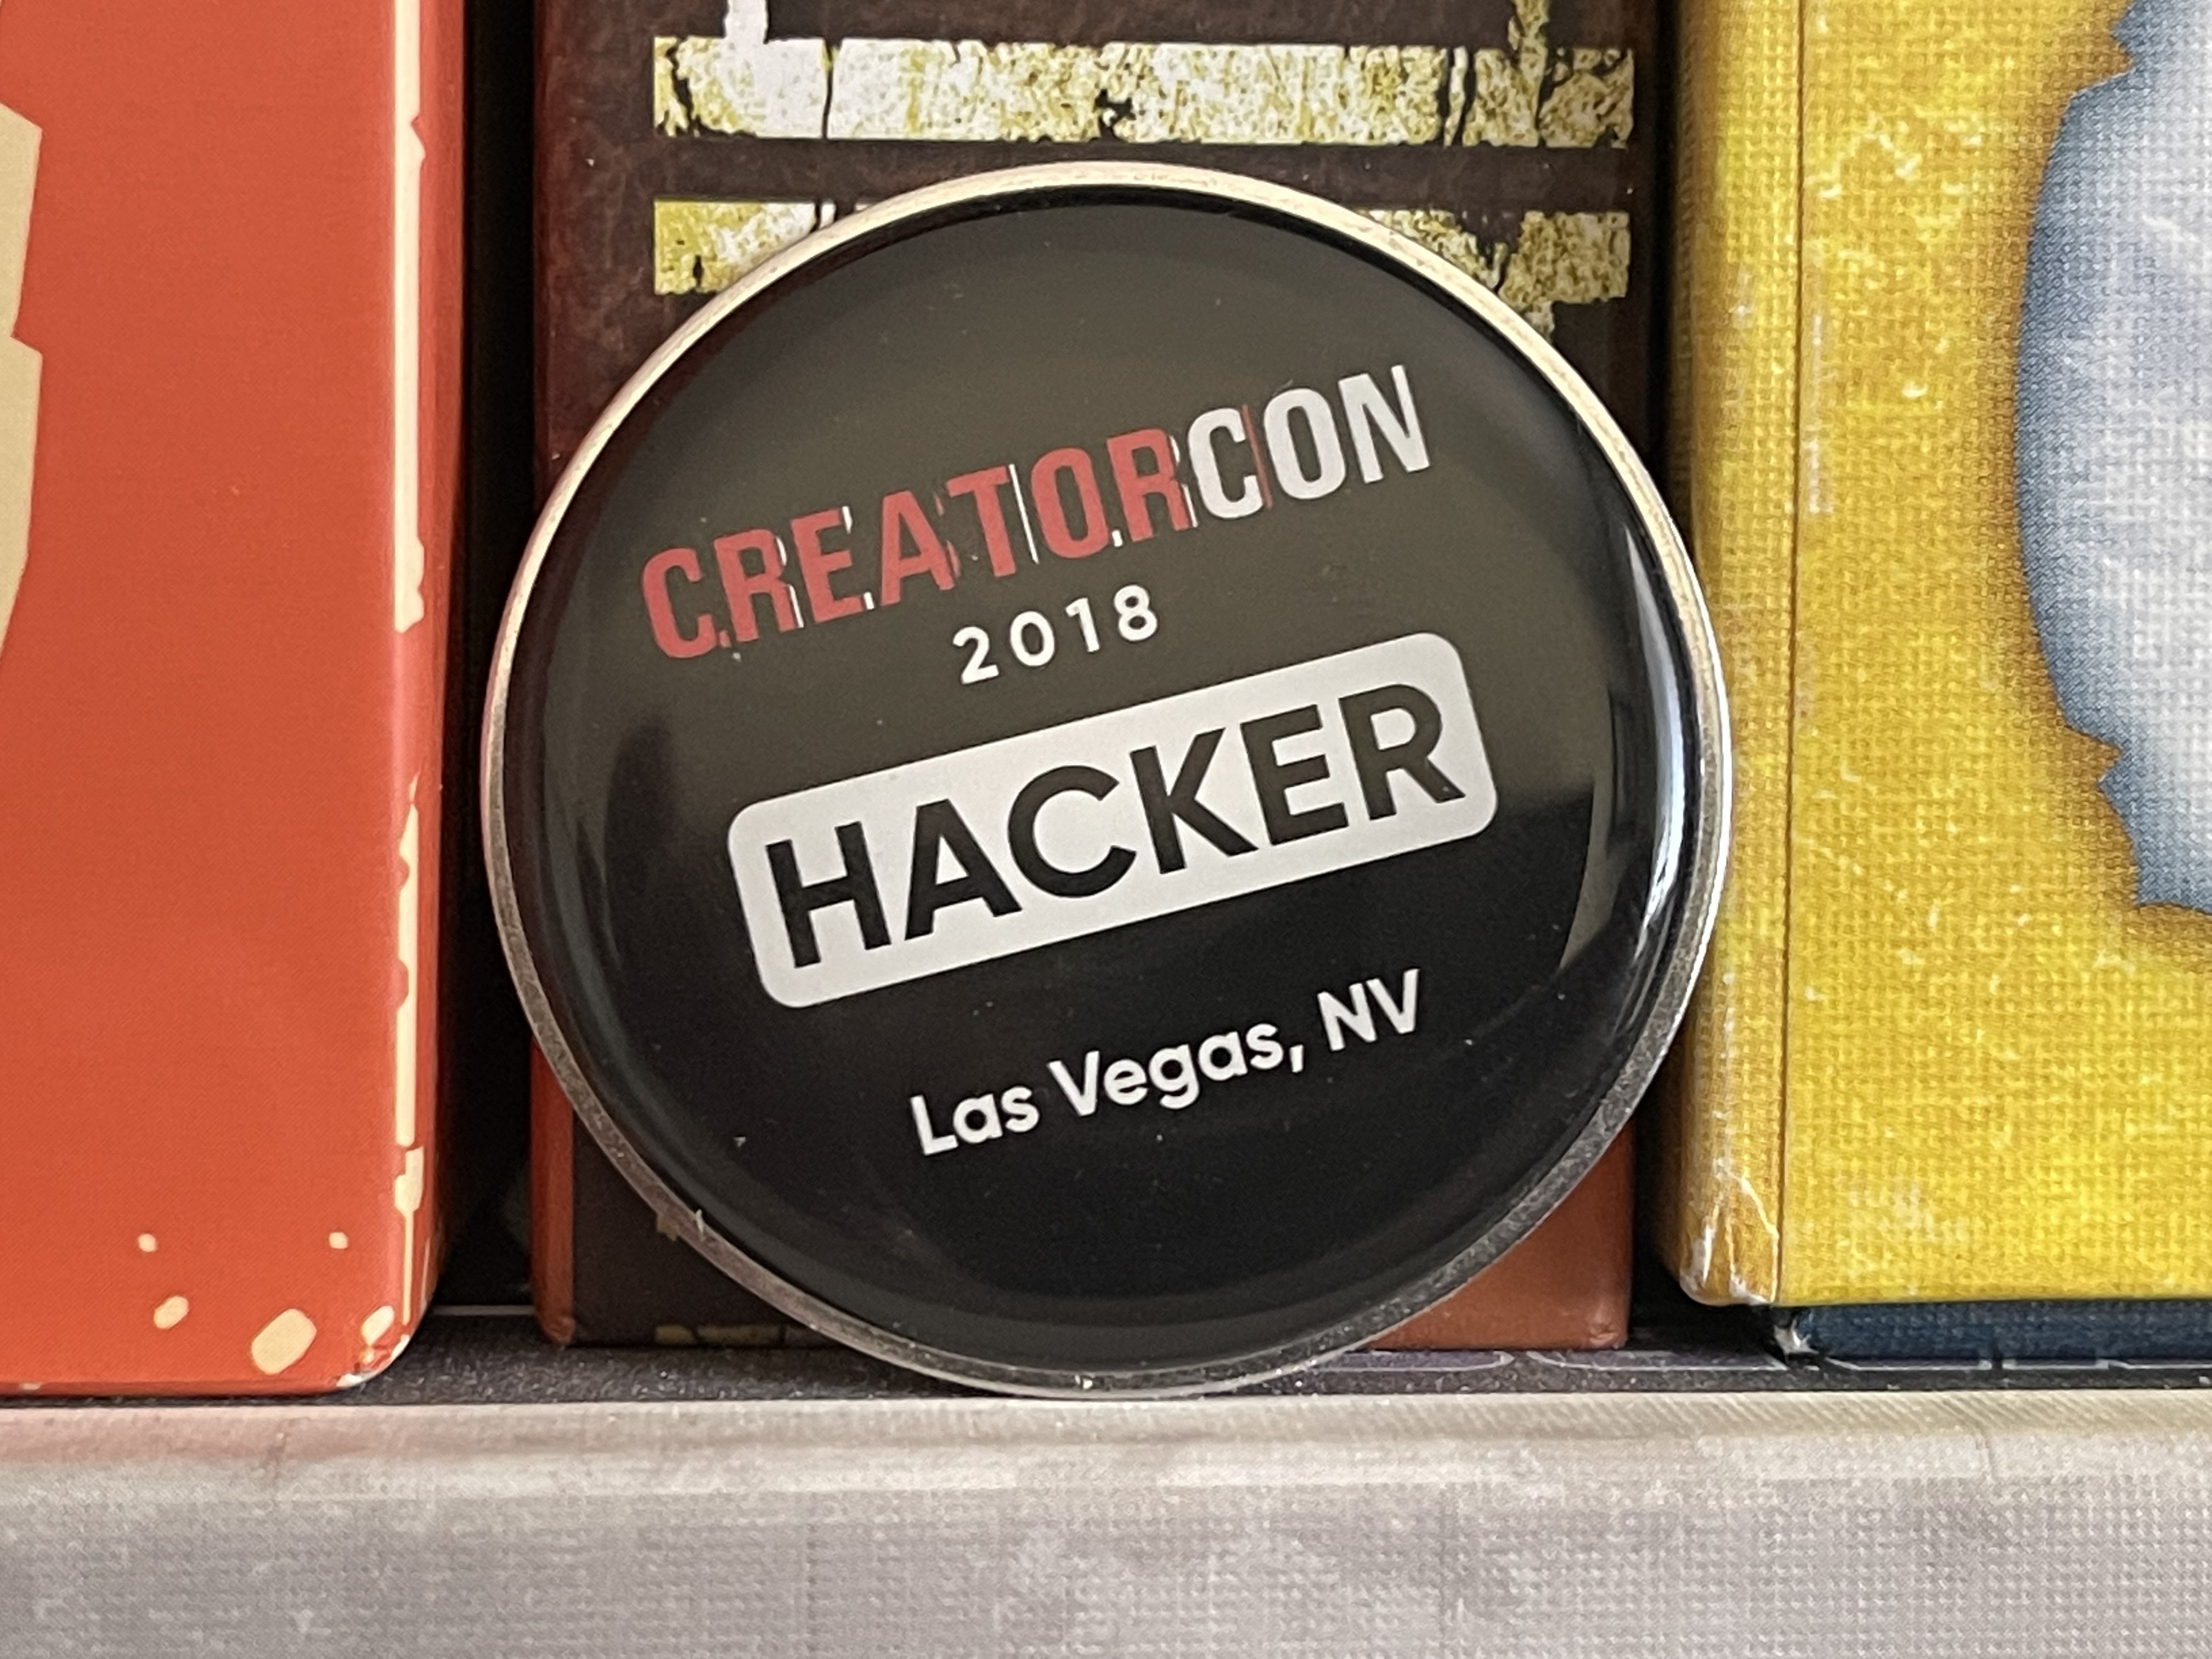 CreatorCon 2018 Hacakthon "Hacker" Pin